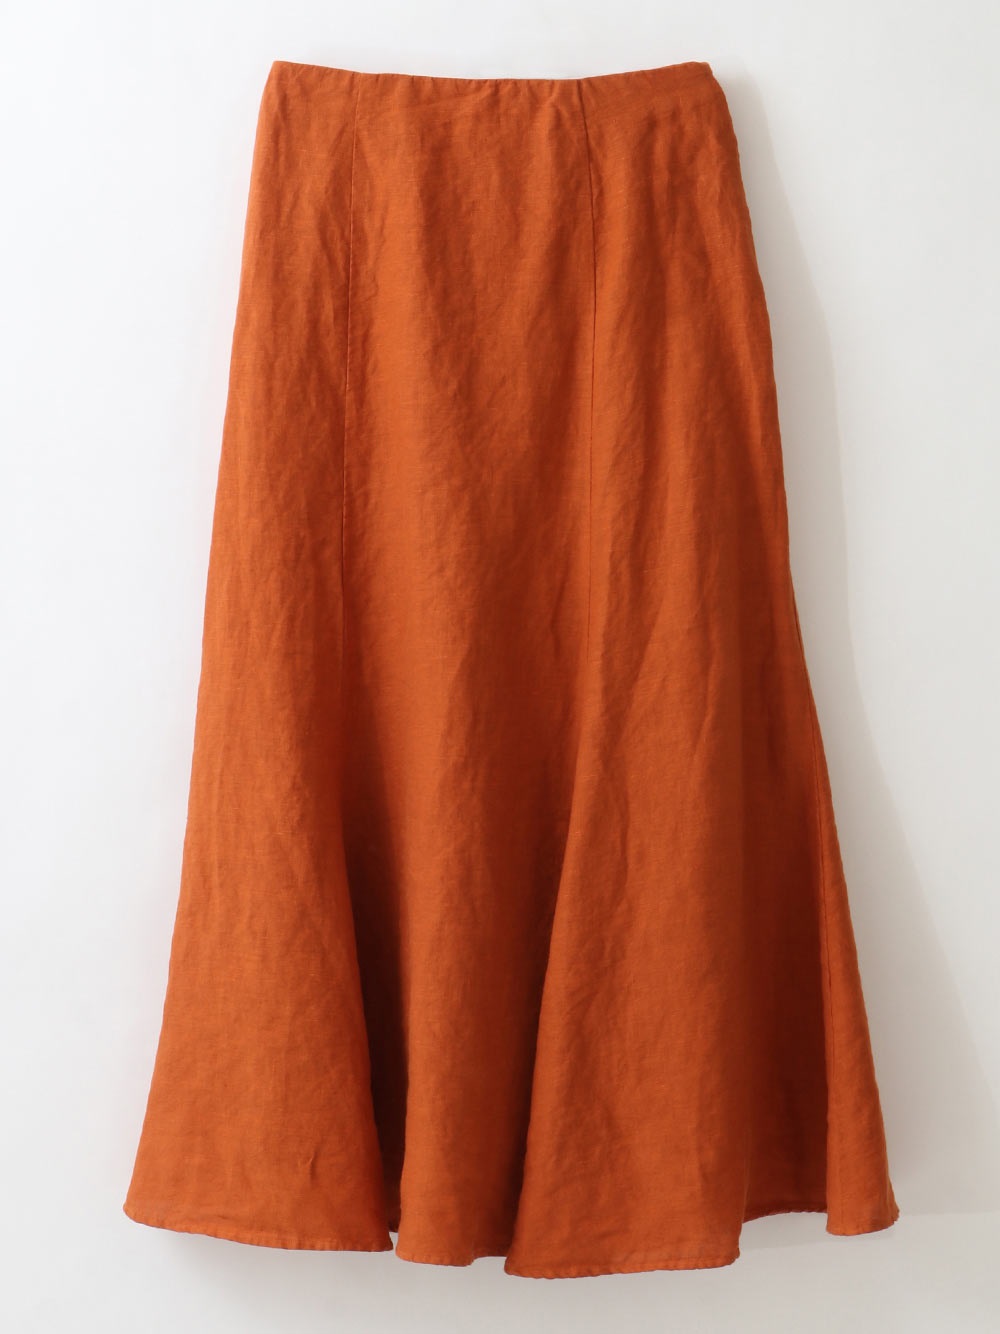 French Linen Skirt(41オレンジ-フリー)